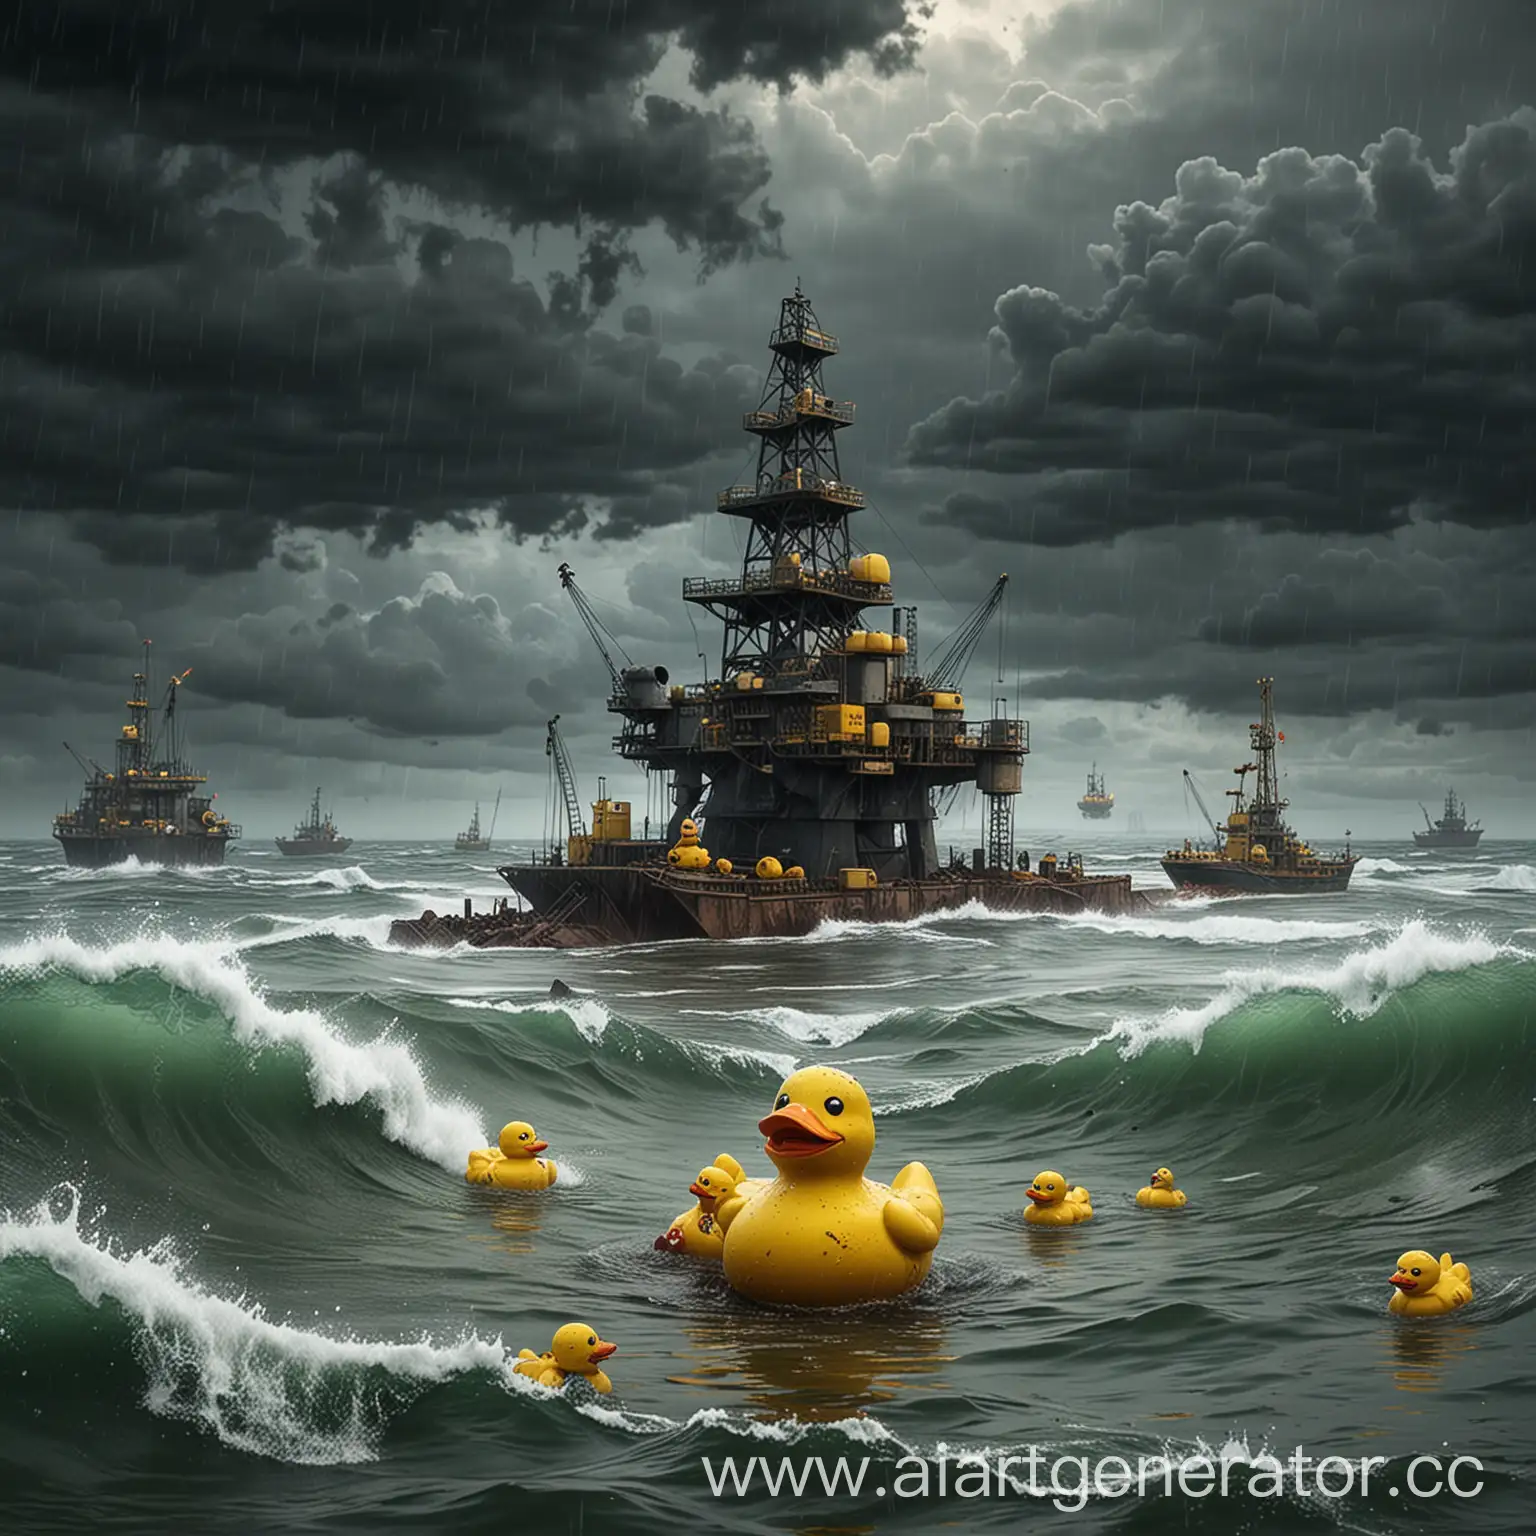 Нарисуй изображение красками в стиле пост апокалипсиса, где резиновые уточки желтого цвета в количестве двух штук, плавают в океане во время шторма, и на заднем фоне станция по добыче нефти.